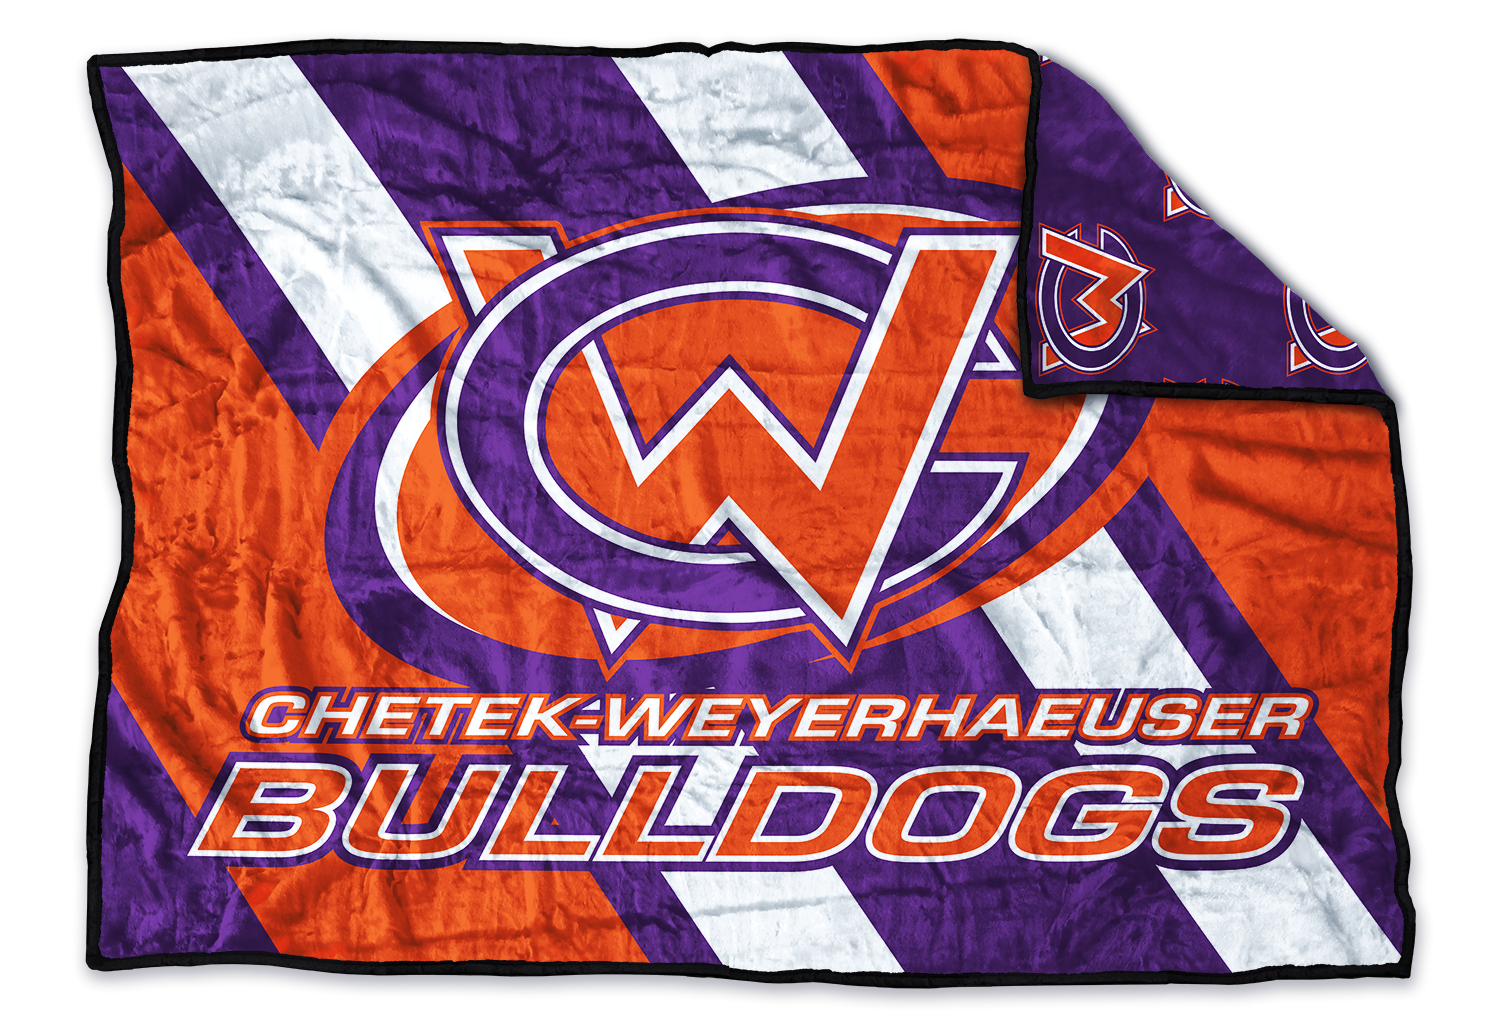 Chetek Weyerhaeuser Bulldogs